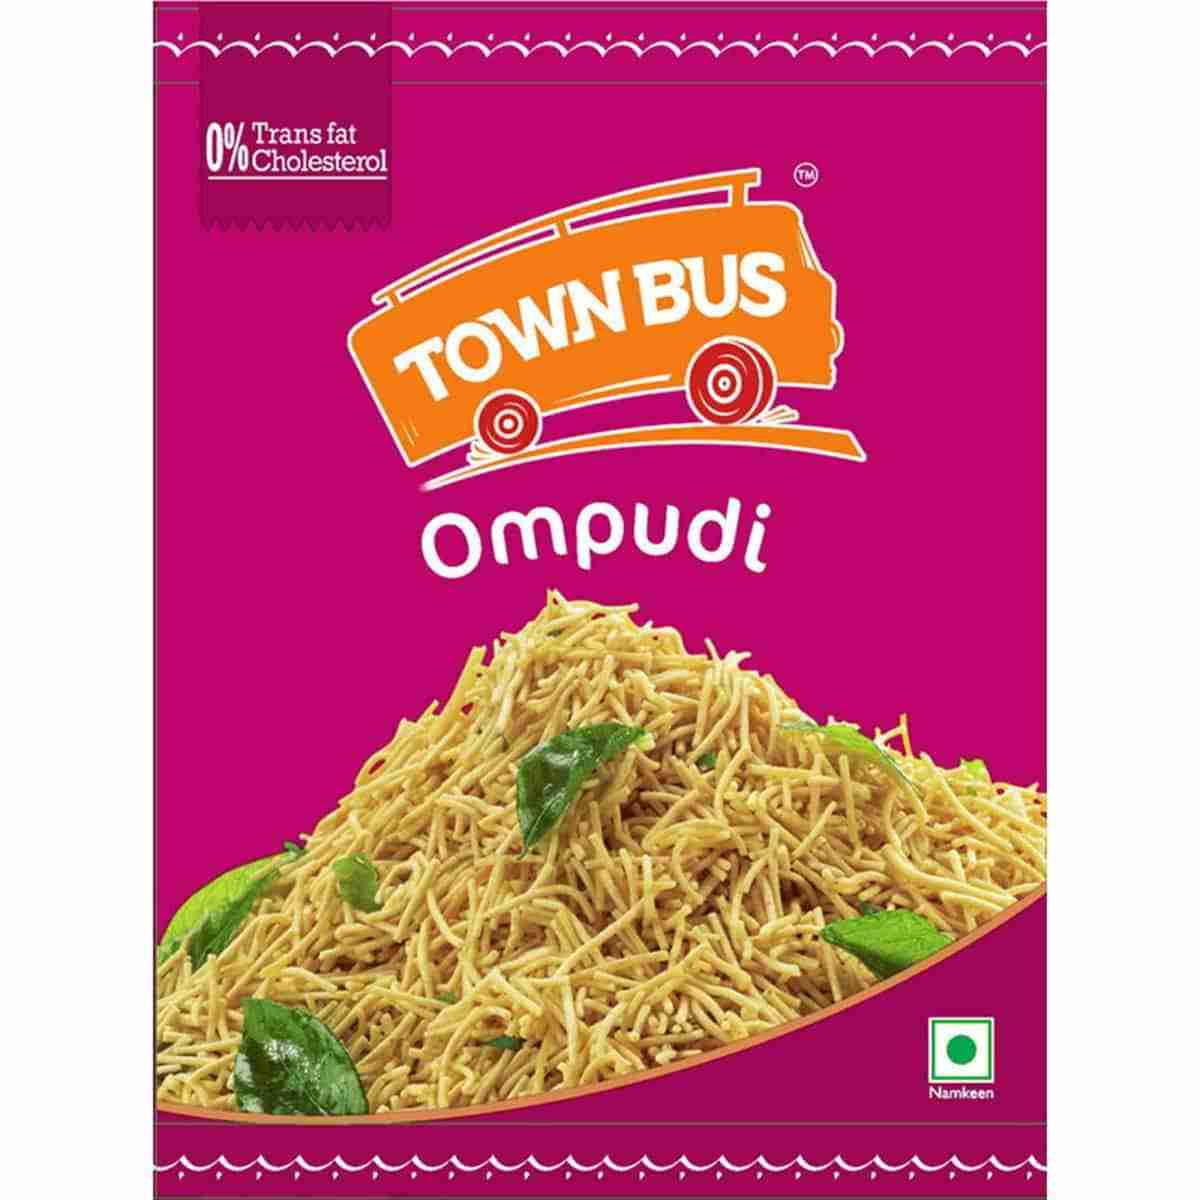 Town Bus Ompudi 150 g